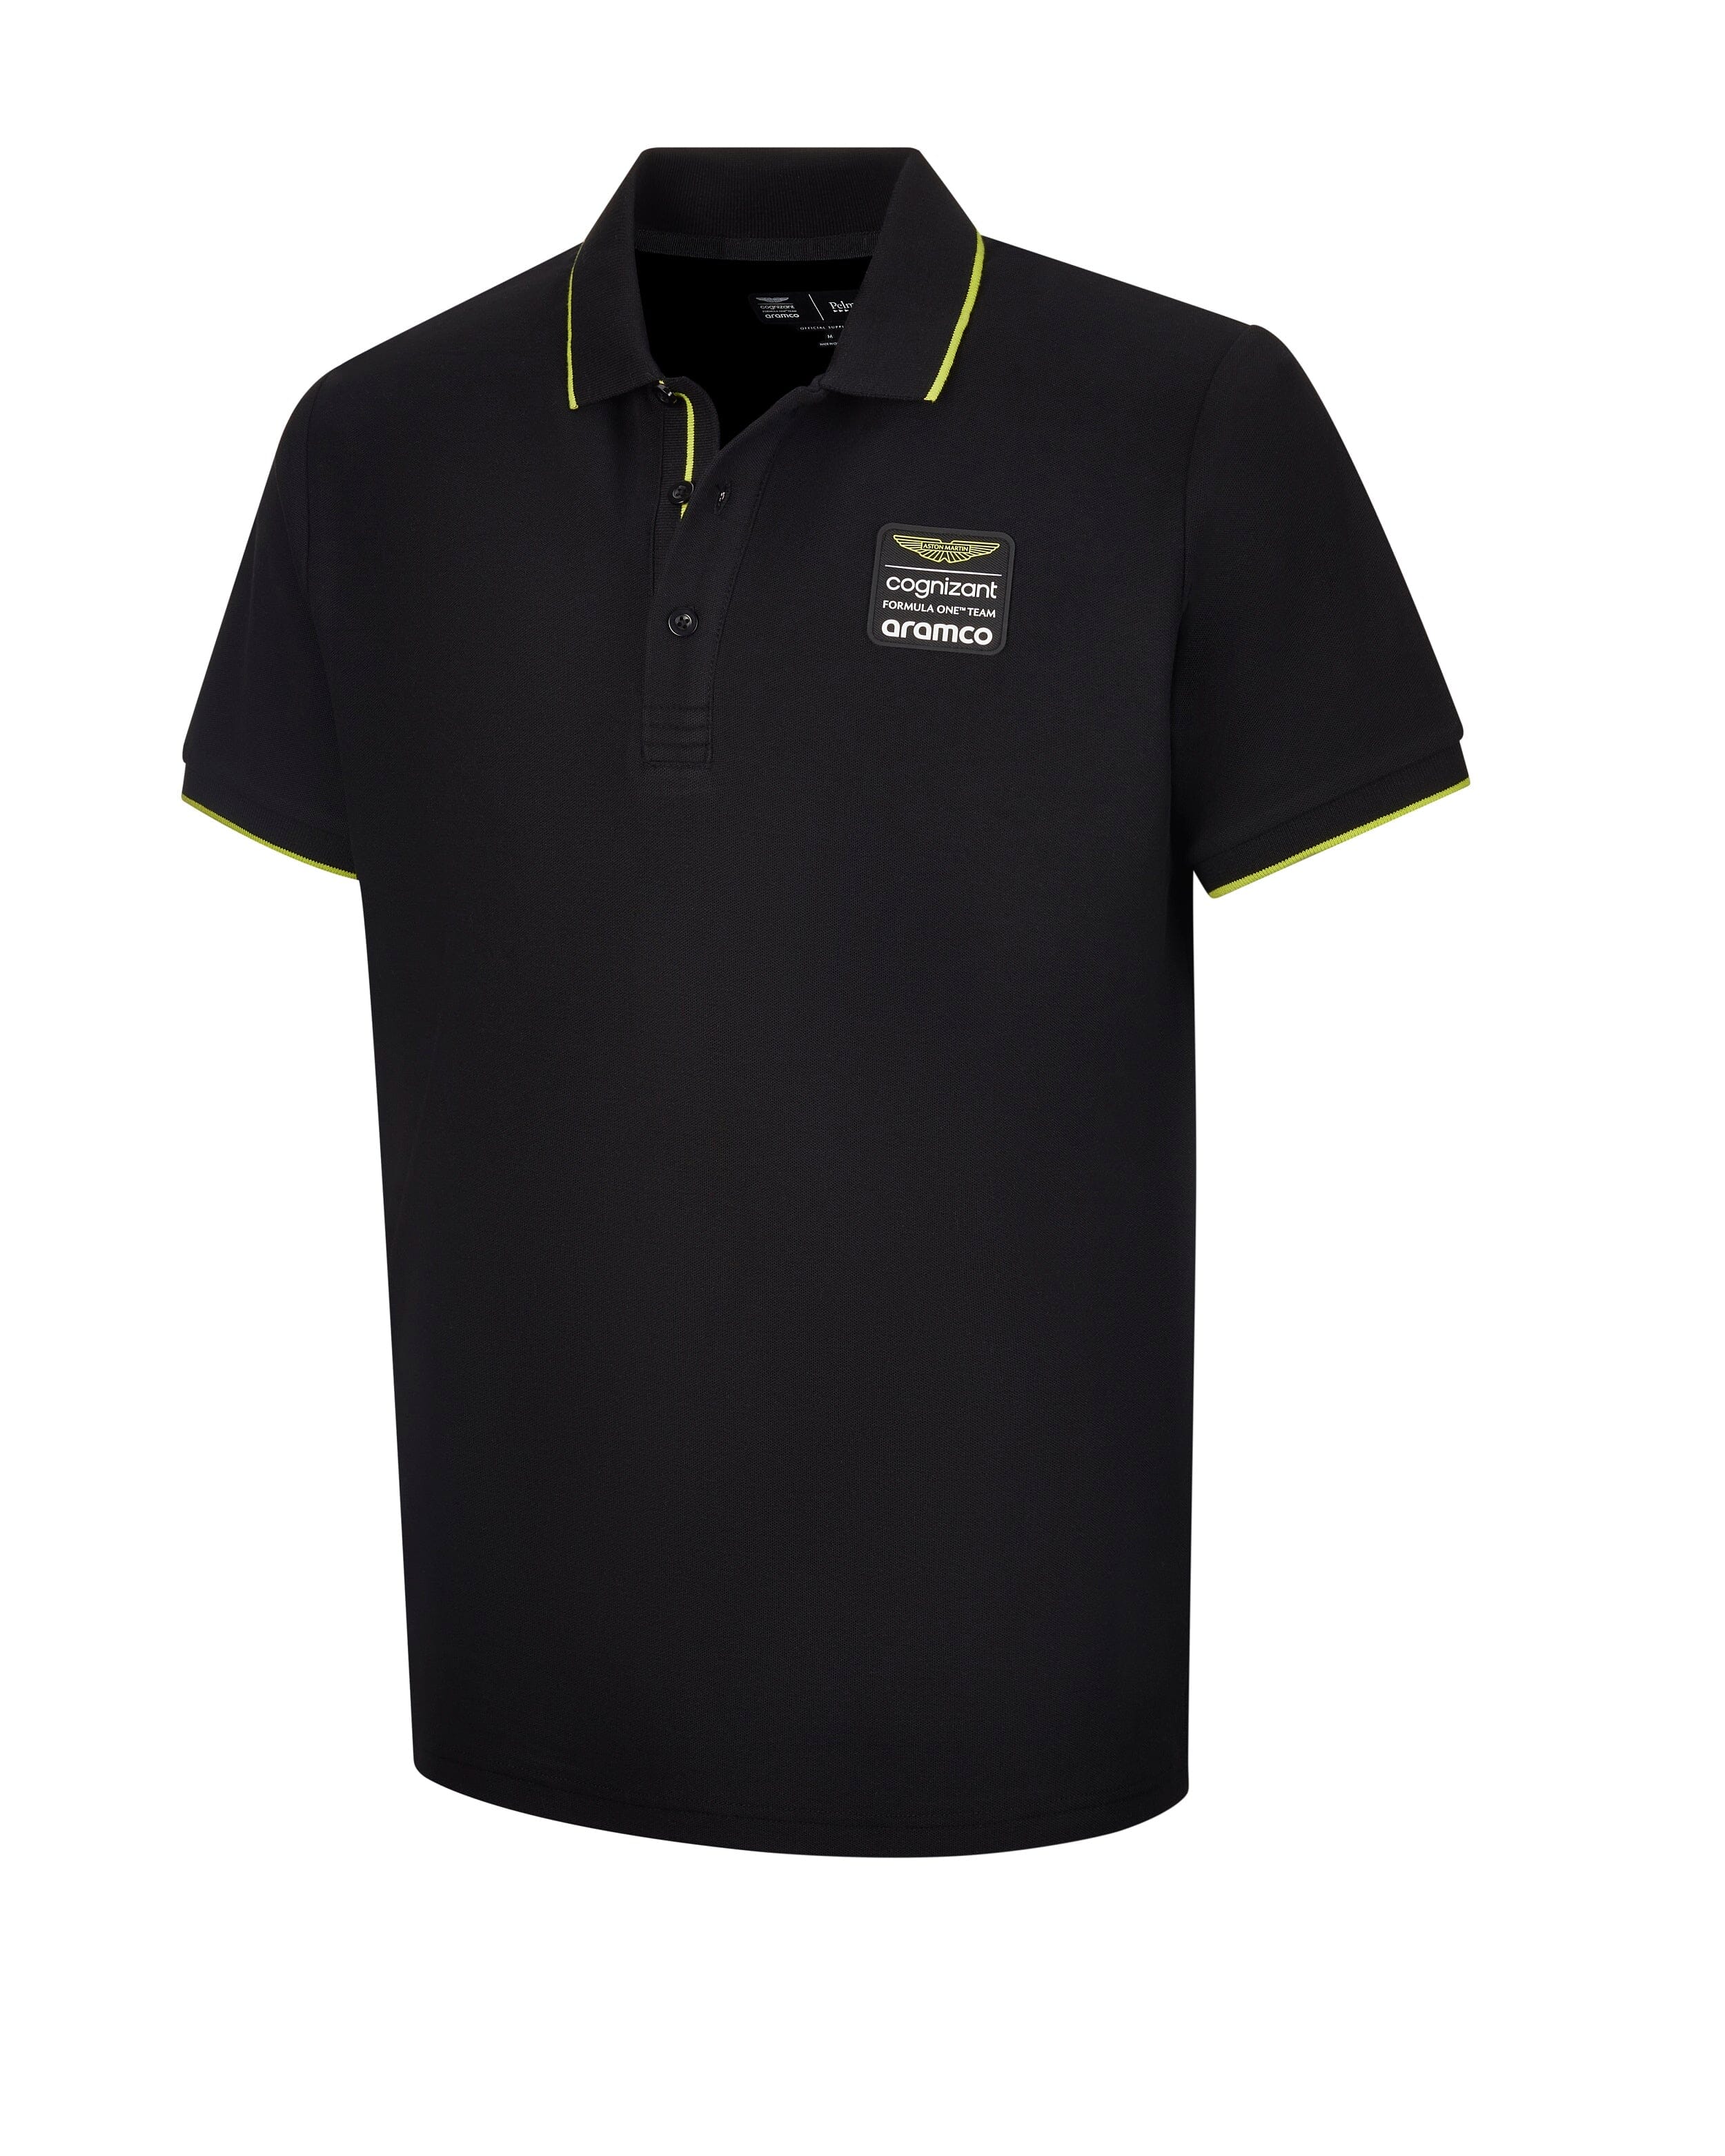 Aston Martin F1 Men's Lifestyle Polo Shirt - Black